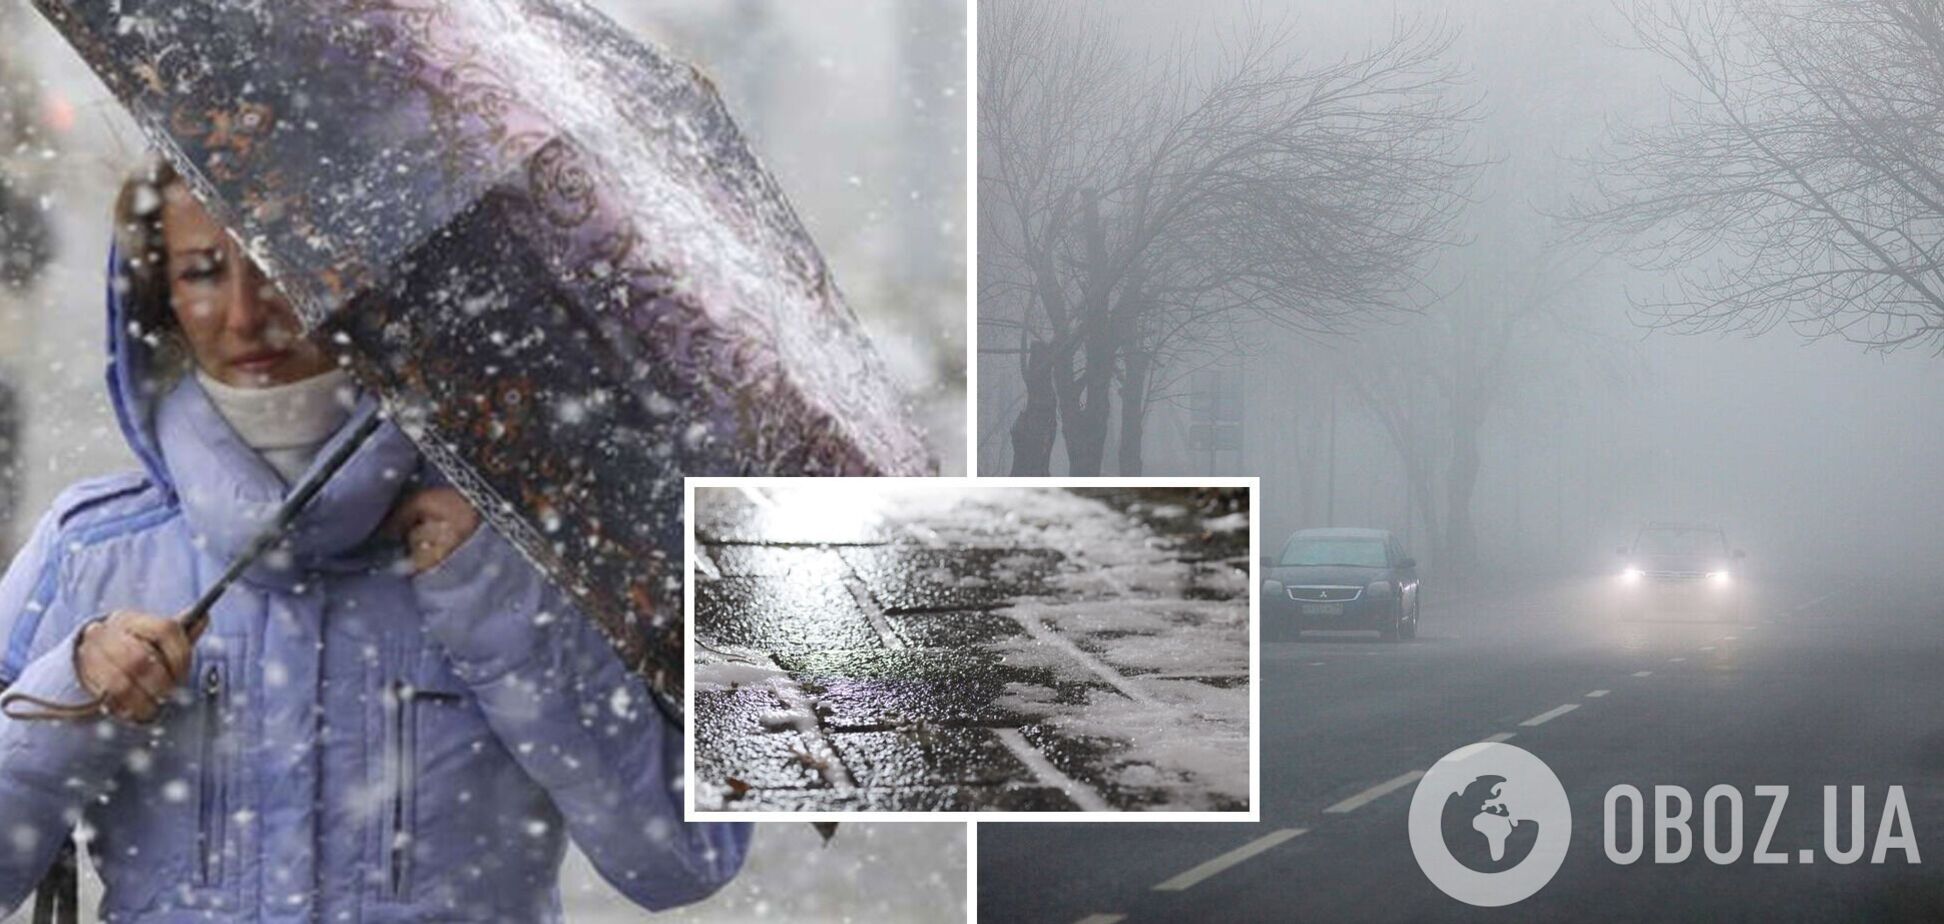 Туман и мокрый снег: синоптики предупредили об опасной ситуации на дорогах в пятницу. Карта